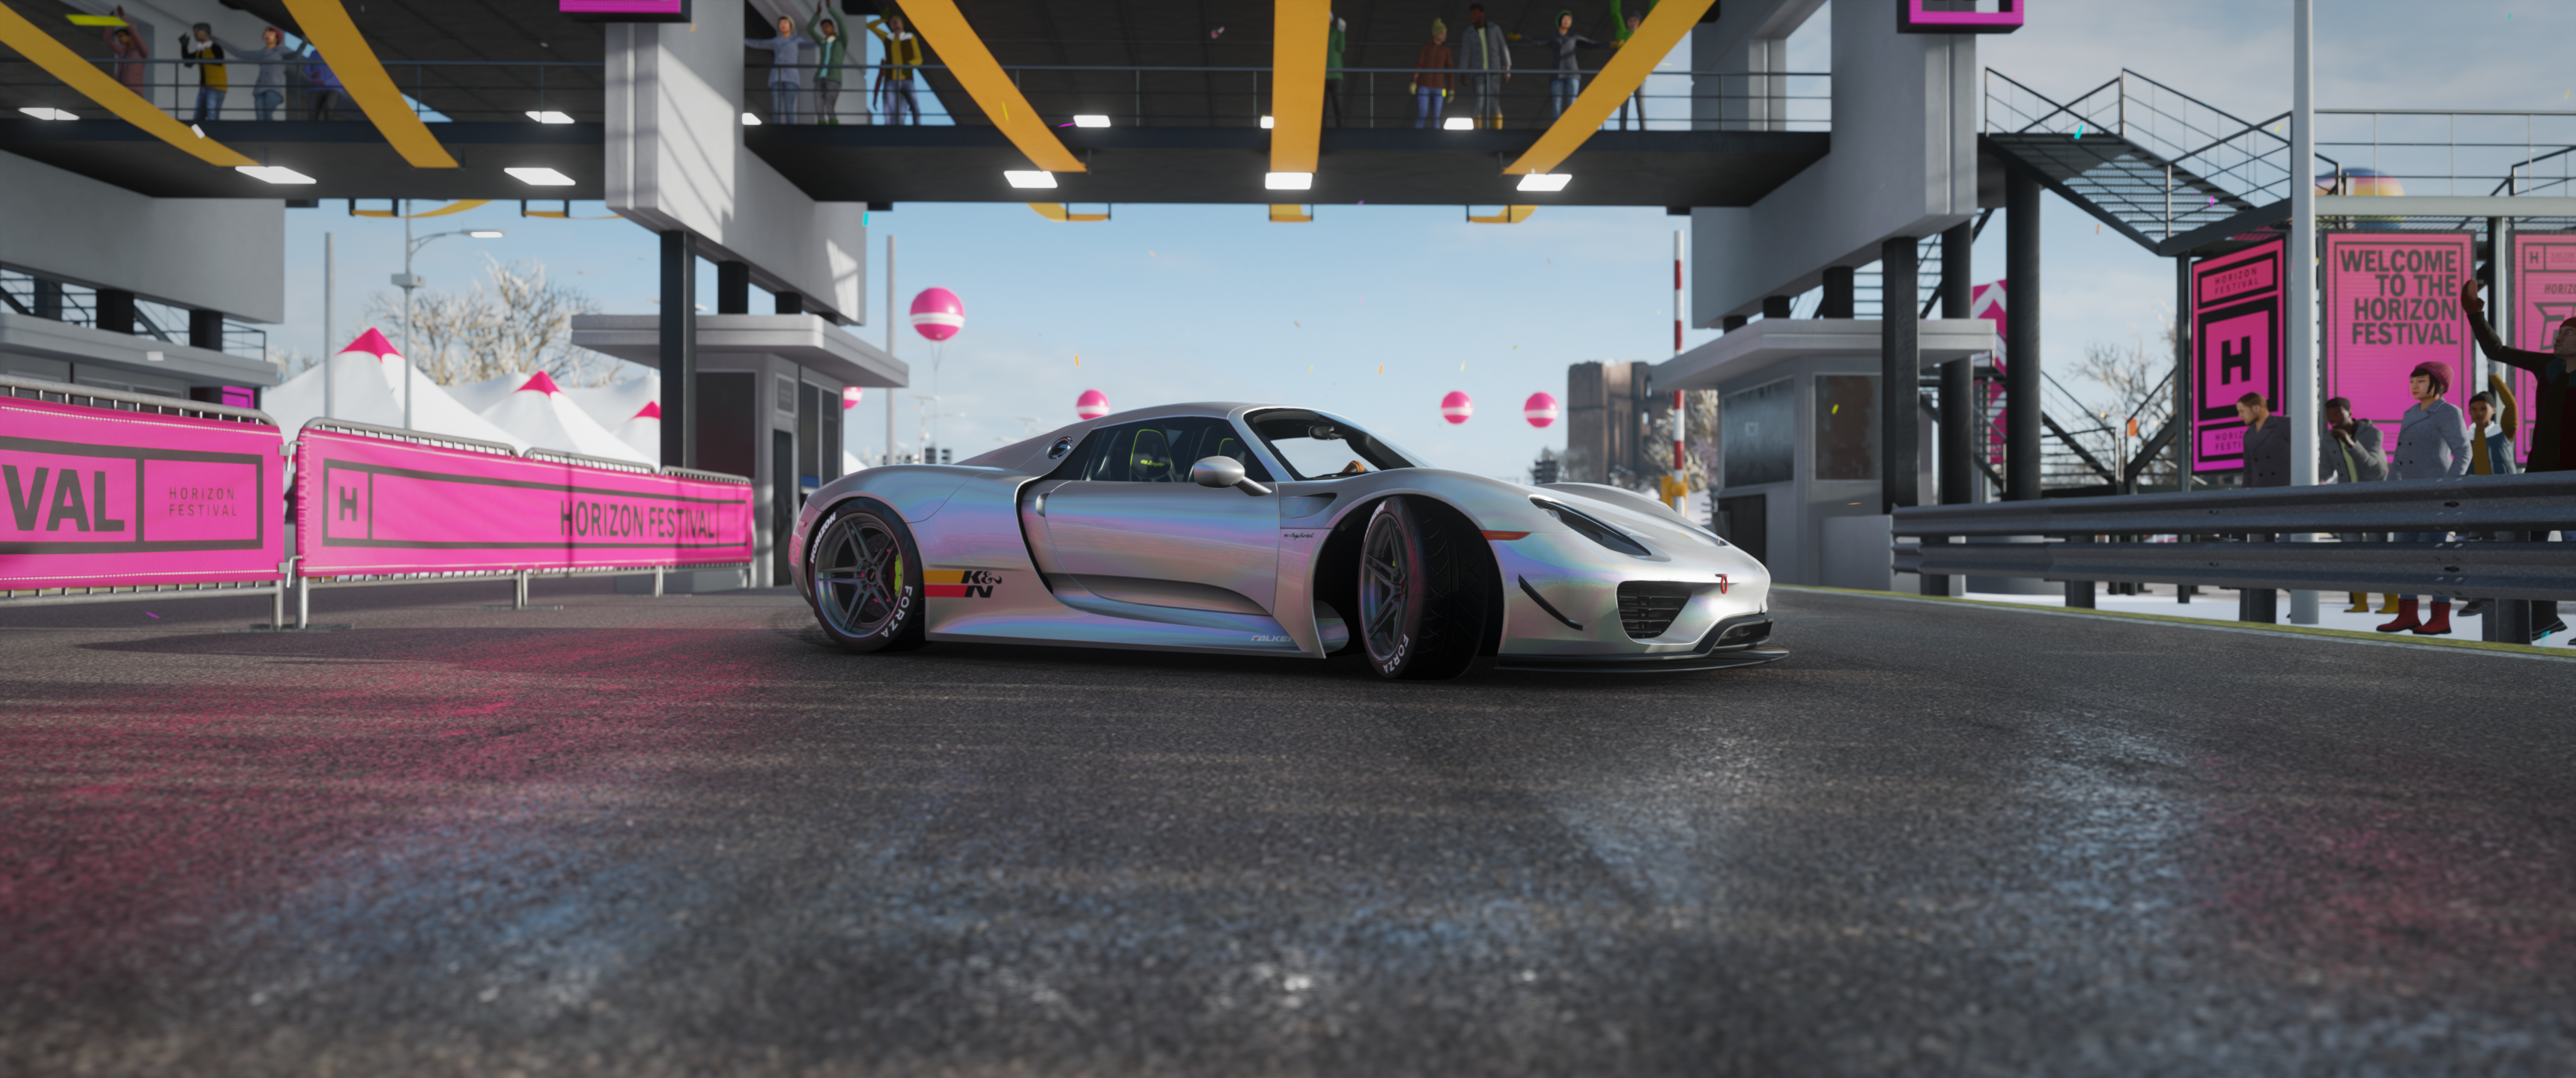 Forza Forza Horizon 4 Racing Car Ultrawide Video Games Porsche 918 Spyder 3440x1440